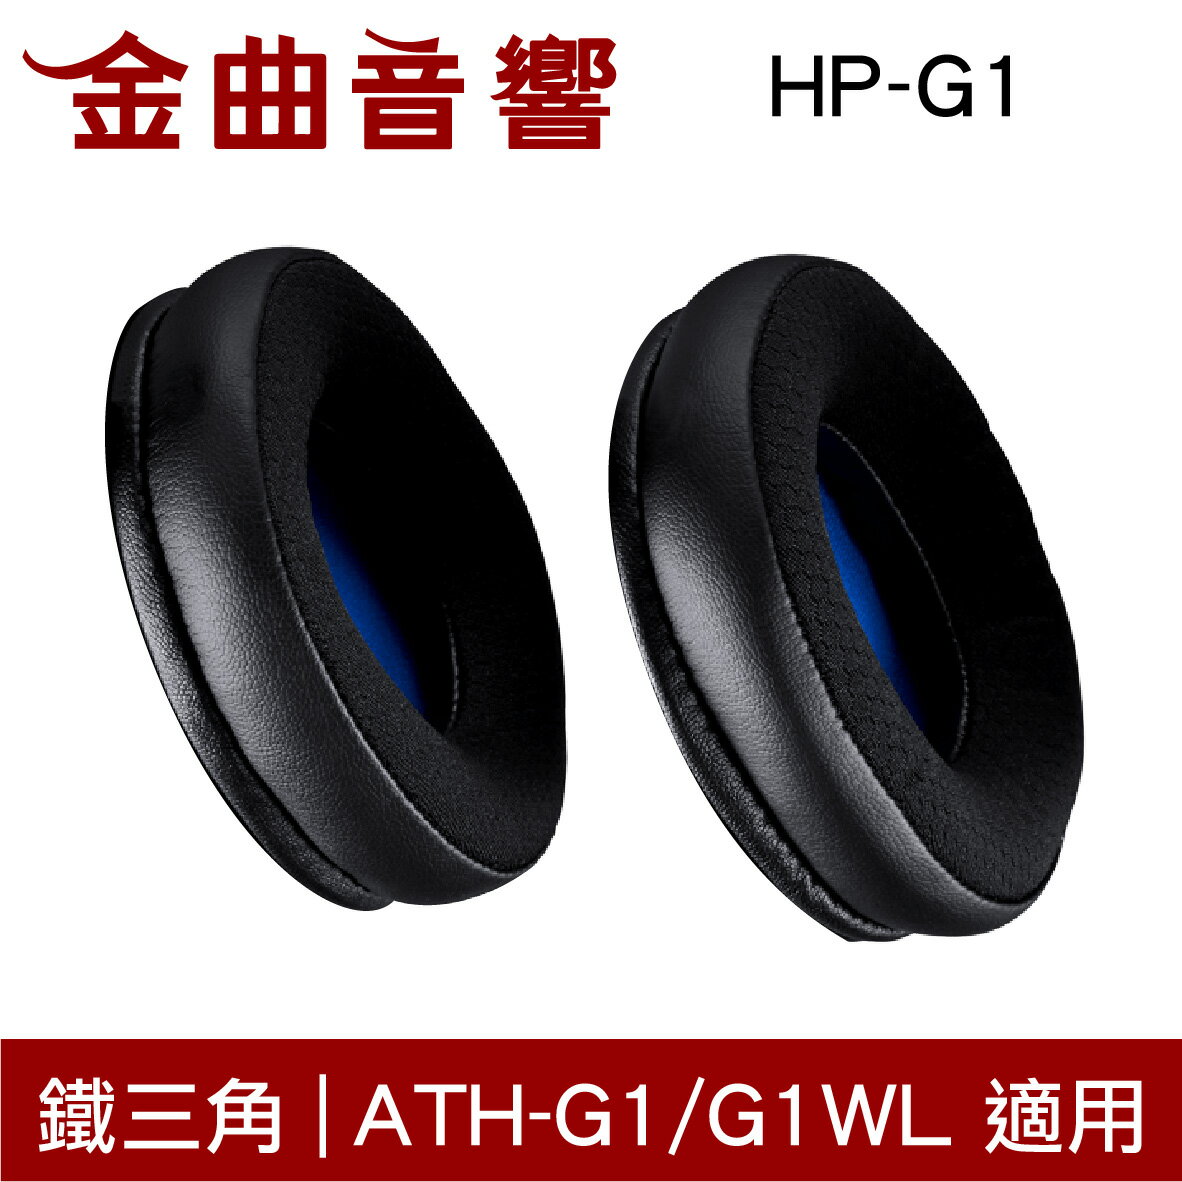 鐵三角 HP-G1 替換耳罩 一對 ATH-G1 / ATH-G1WL 適用 | 金曲音響